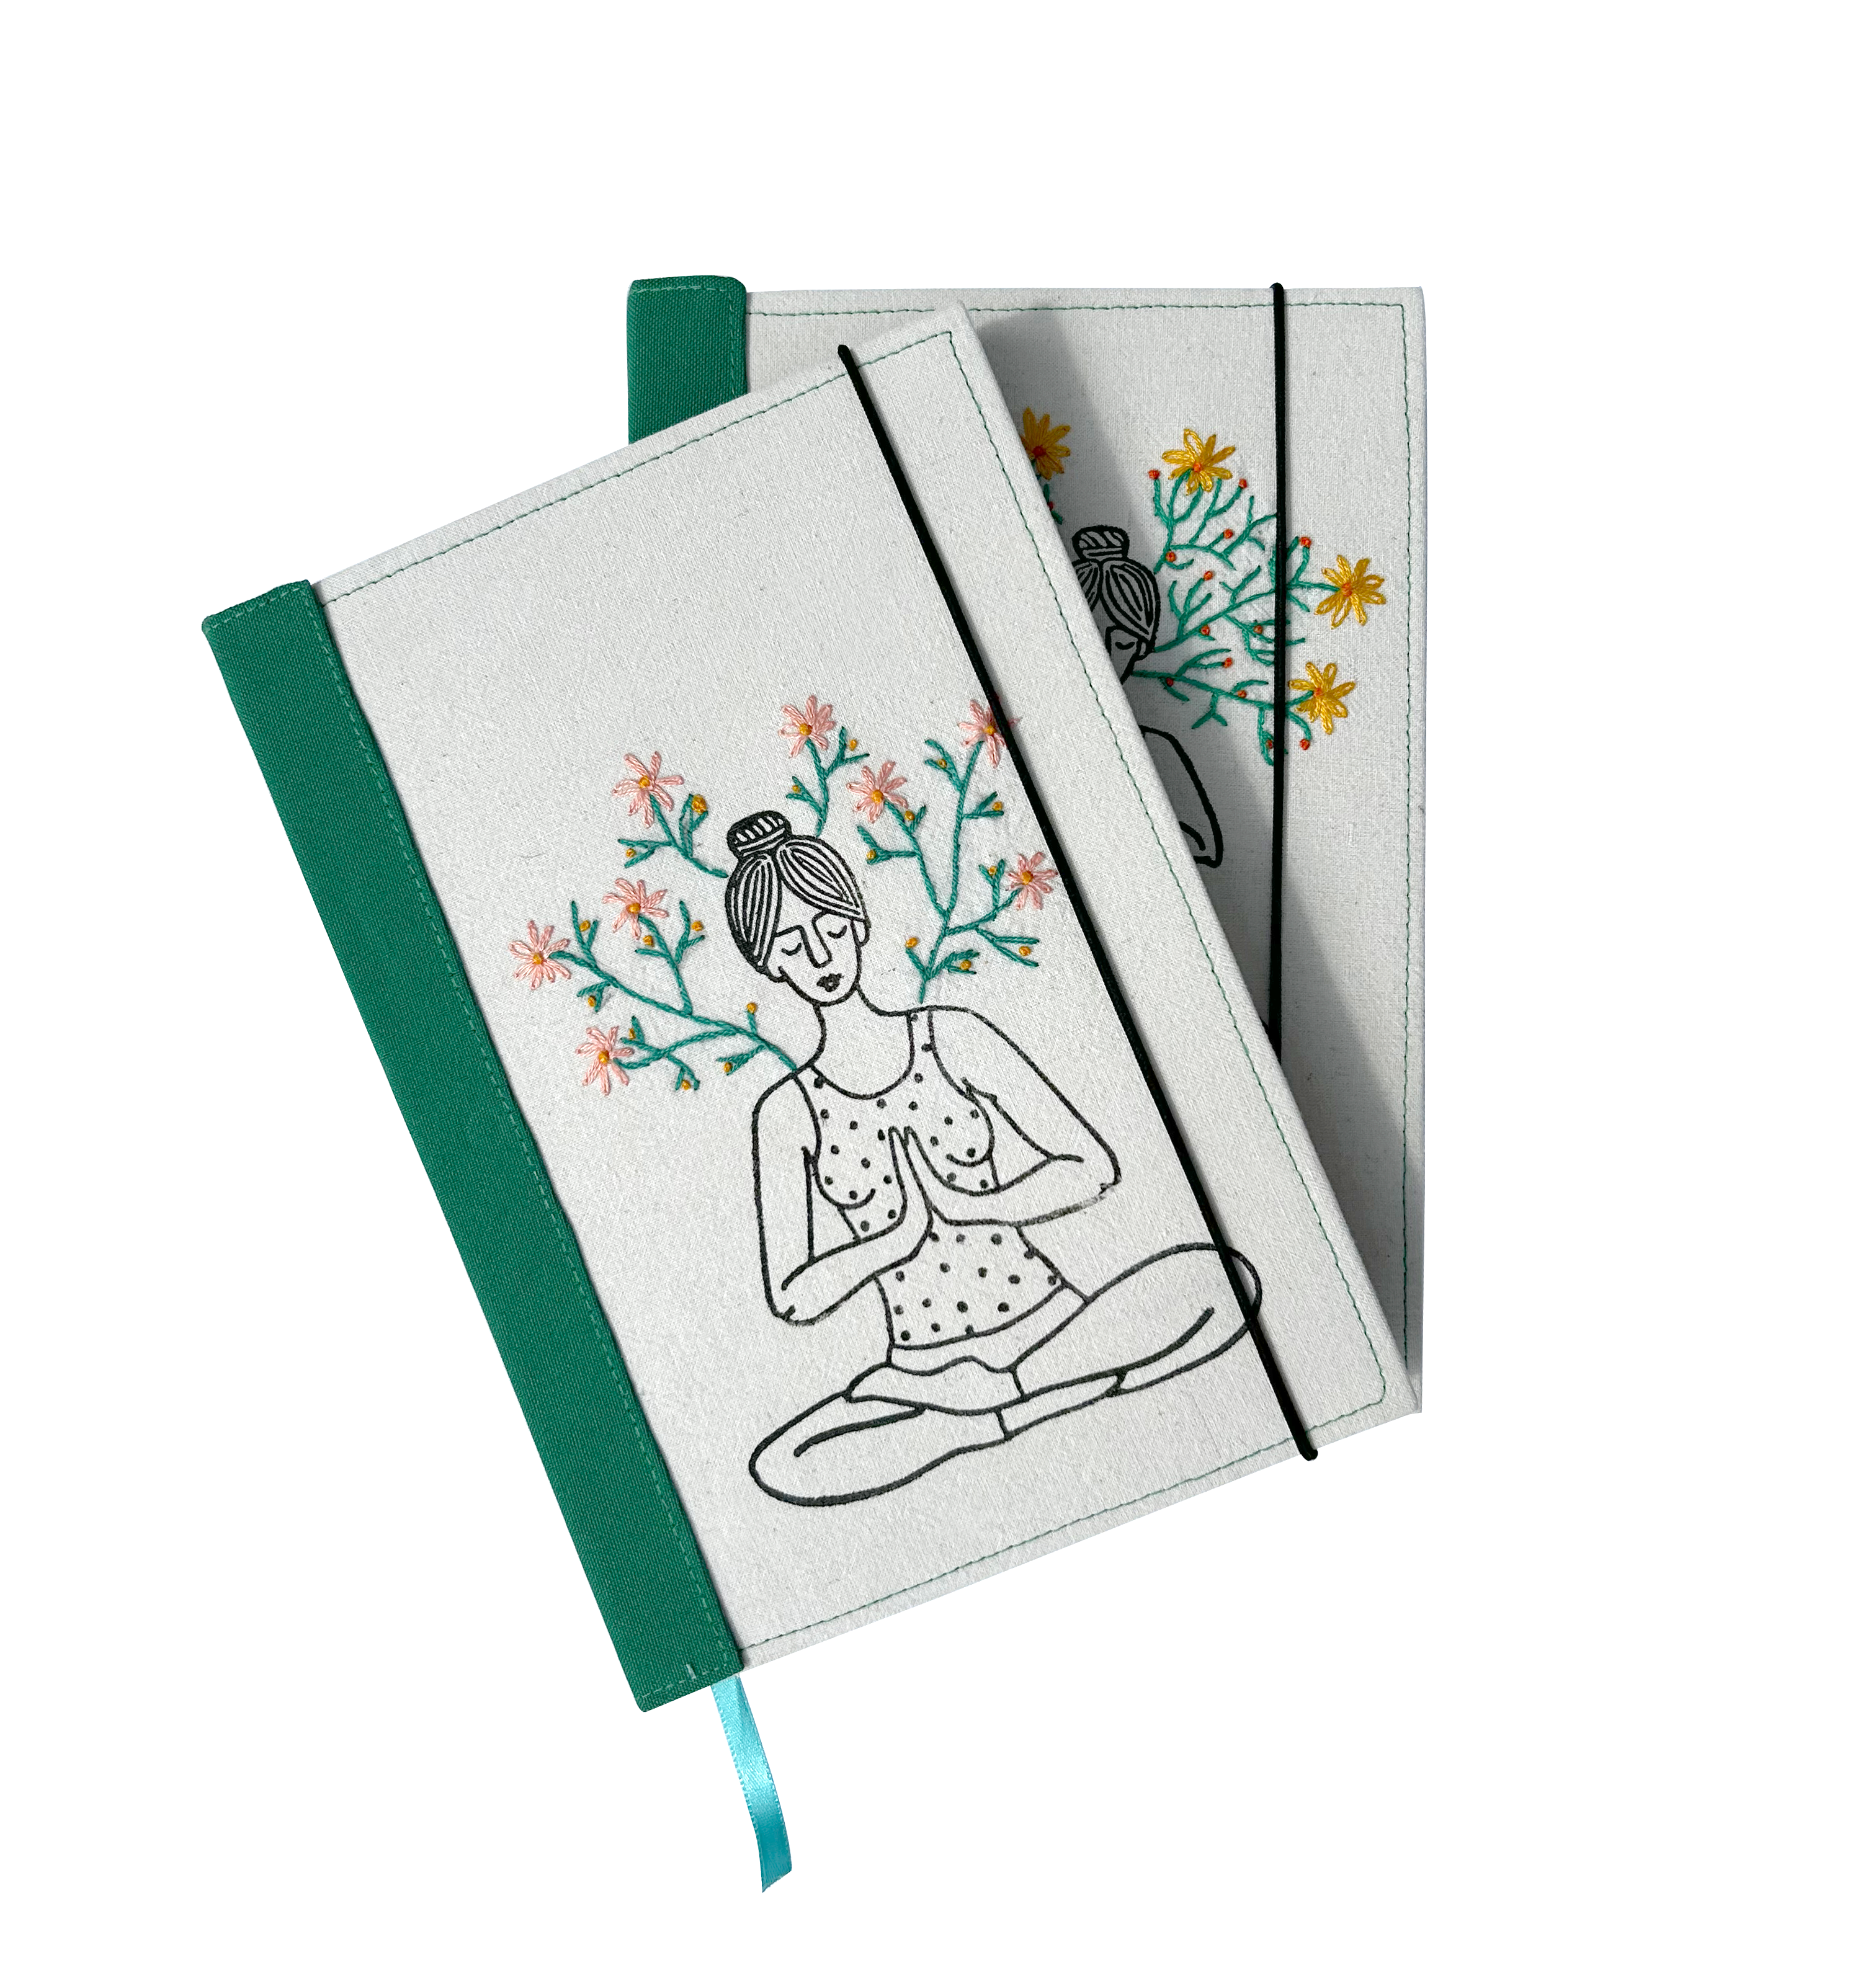 Handmade Yoga Journal Notebook Diary Gift for Yoga Teacher Made from S -  Treelance Yoga